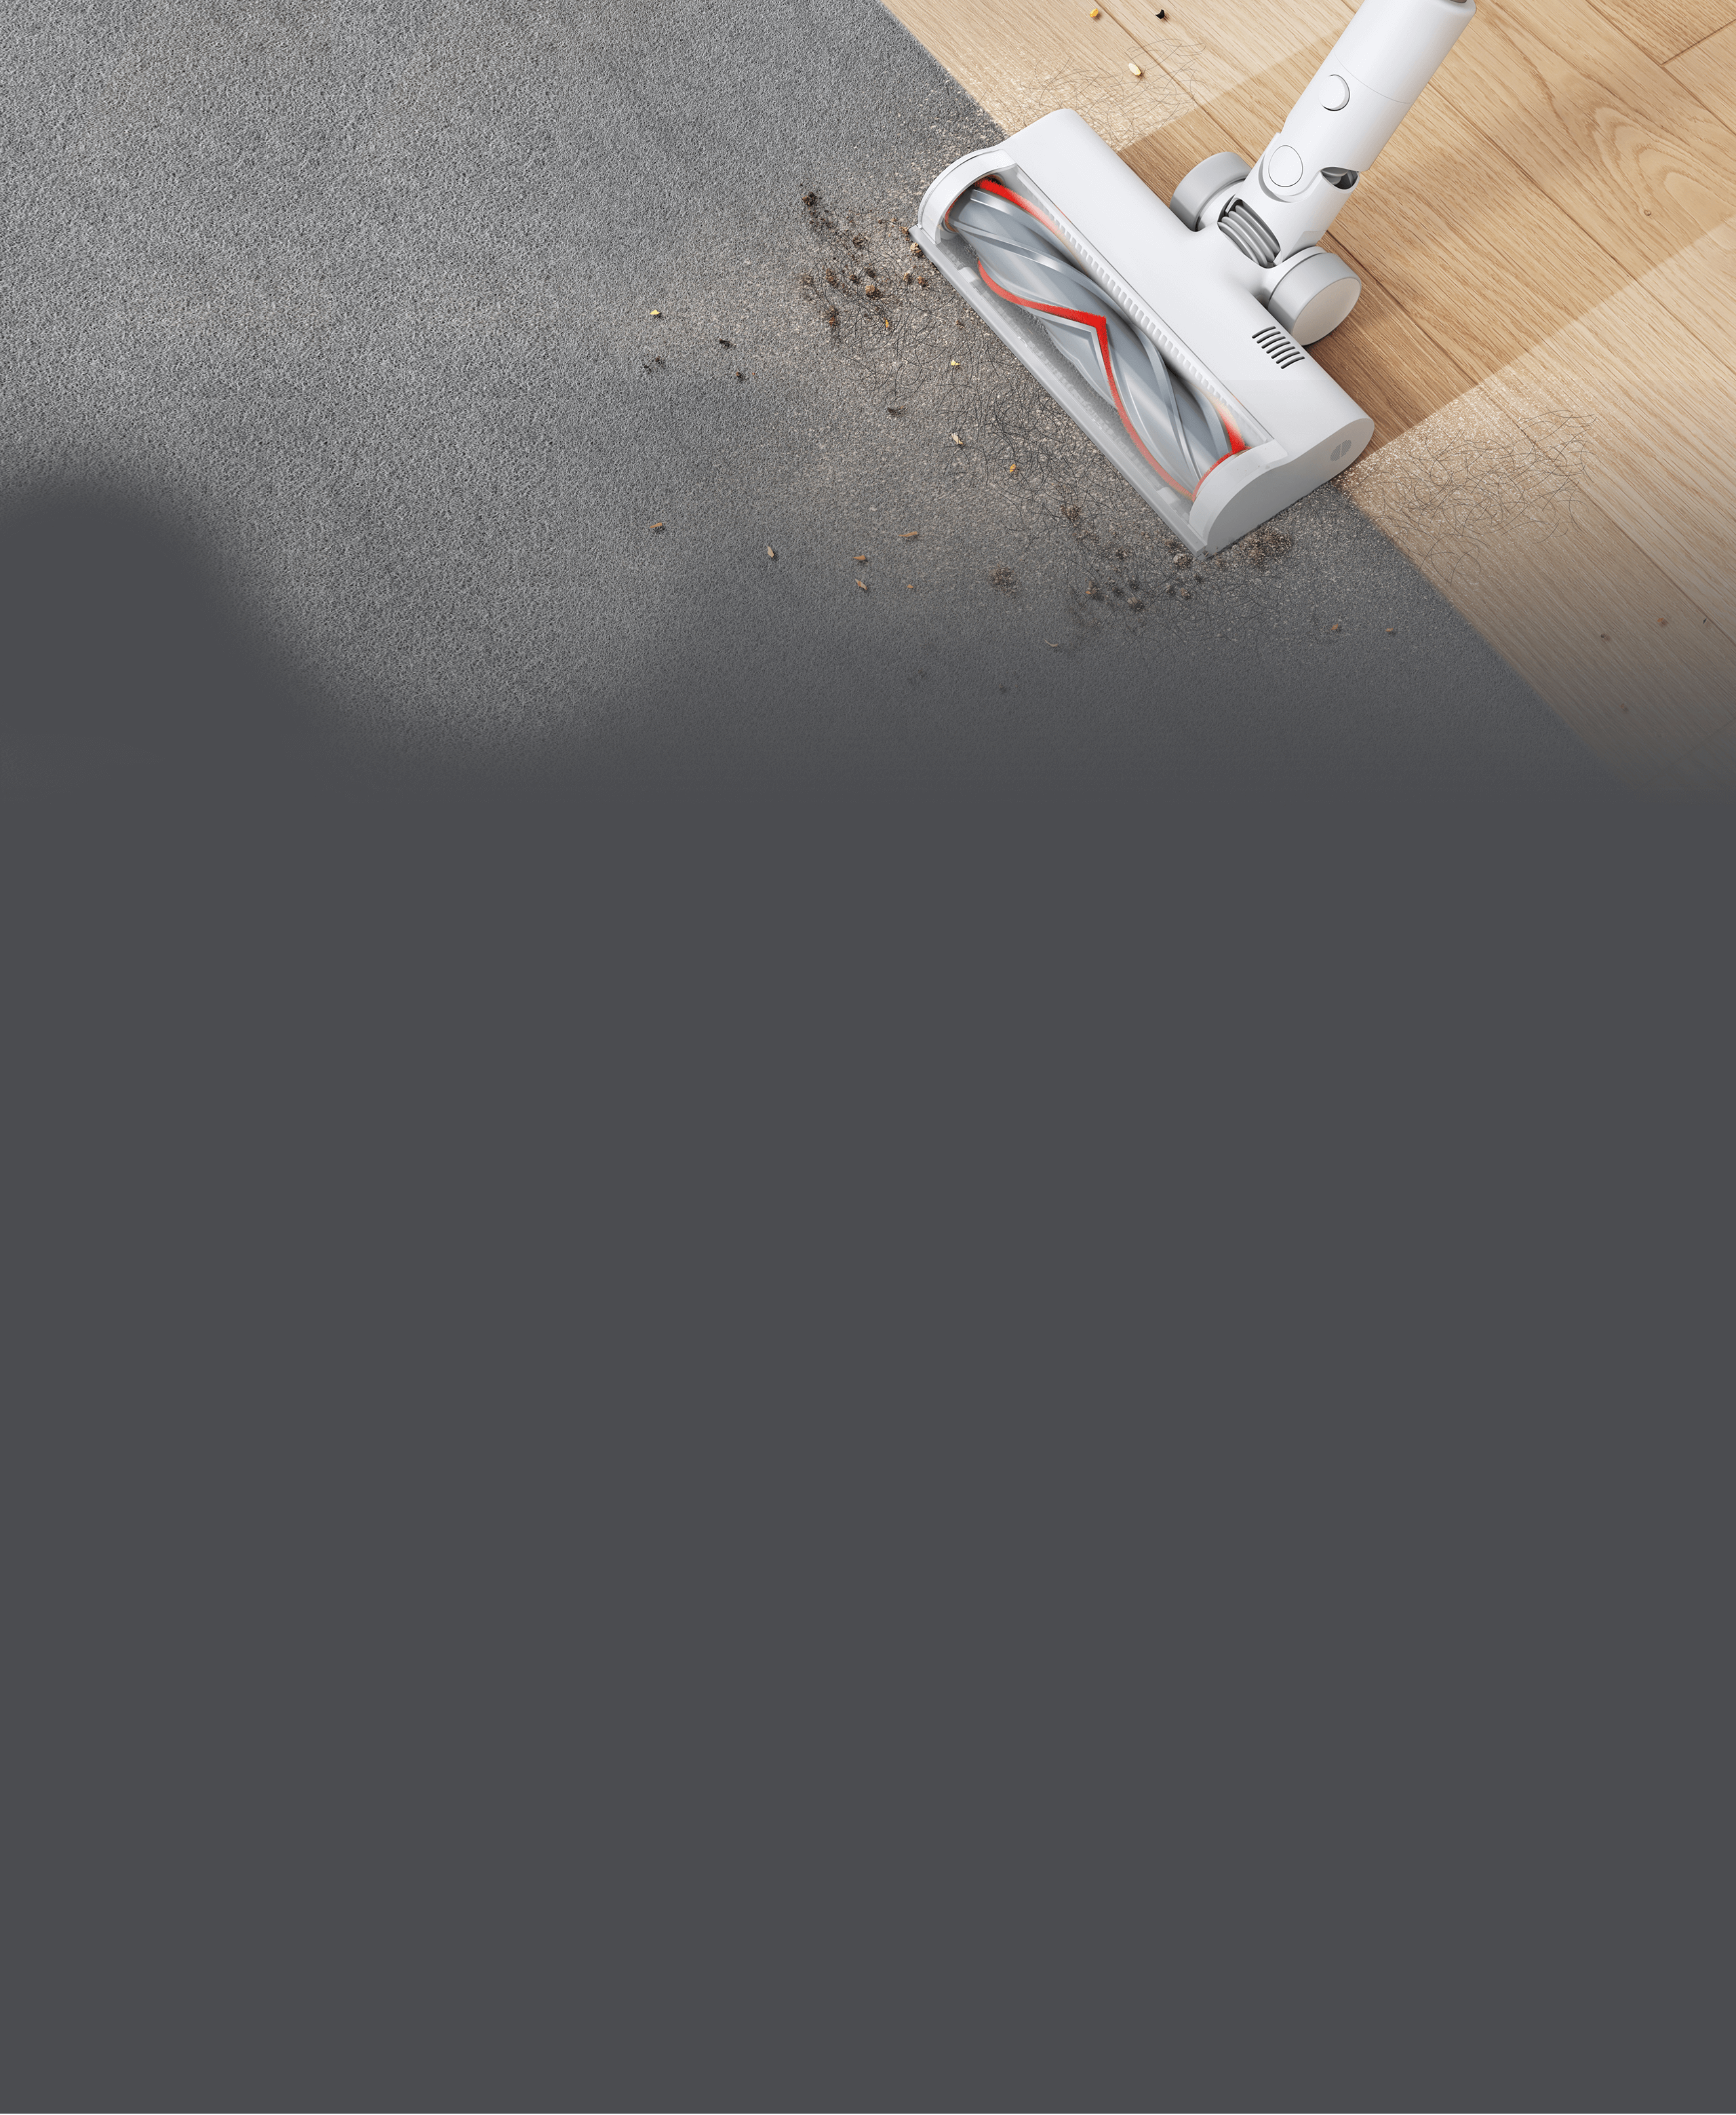 Xiaomi Mi Handheld Vacuum Cleaner G9 Plus Красноярск